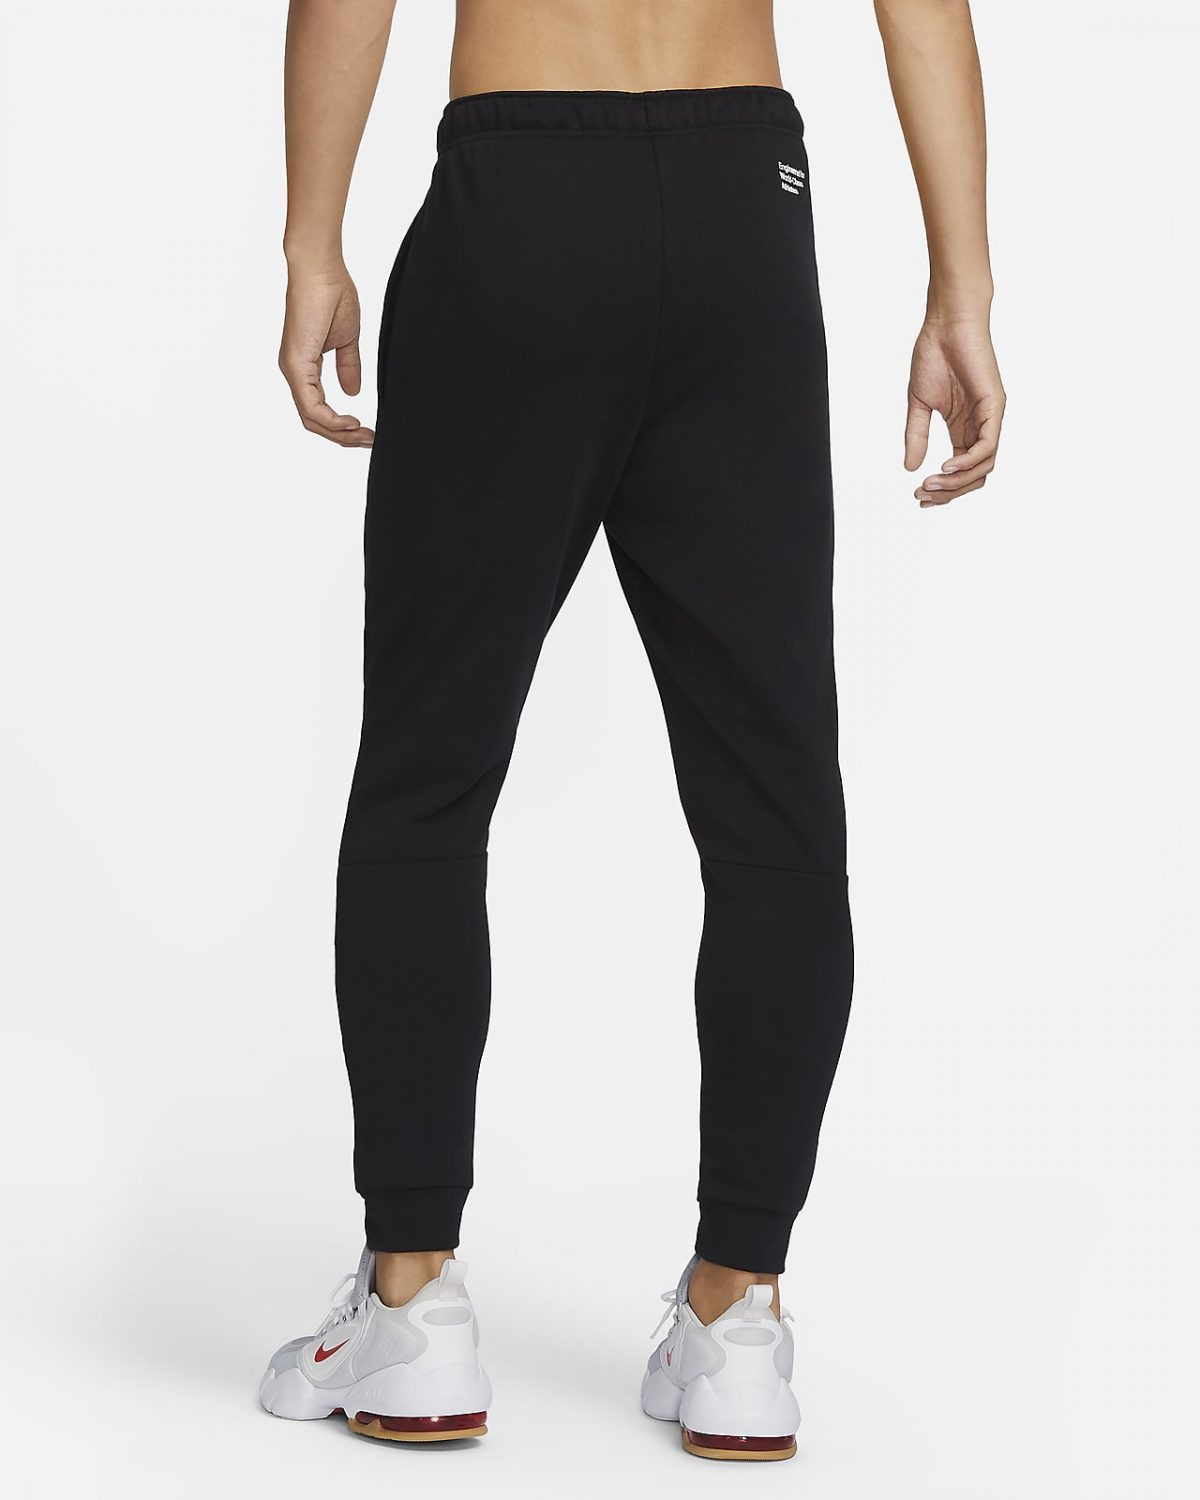 Мужские брюки Nike Dri-FIT черные фотография